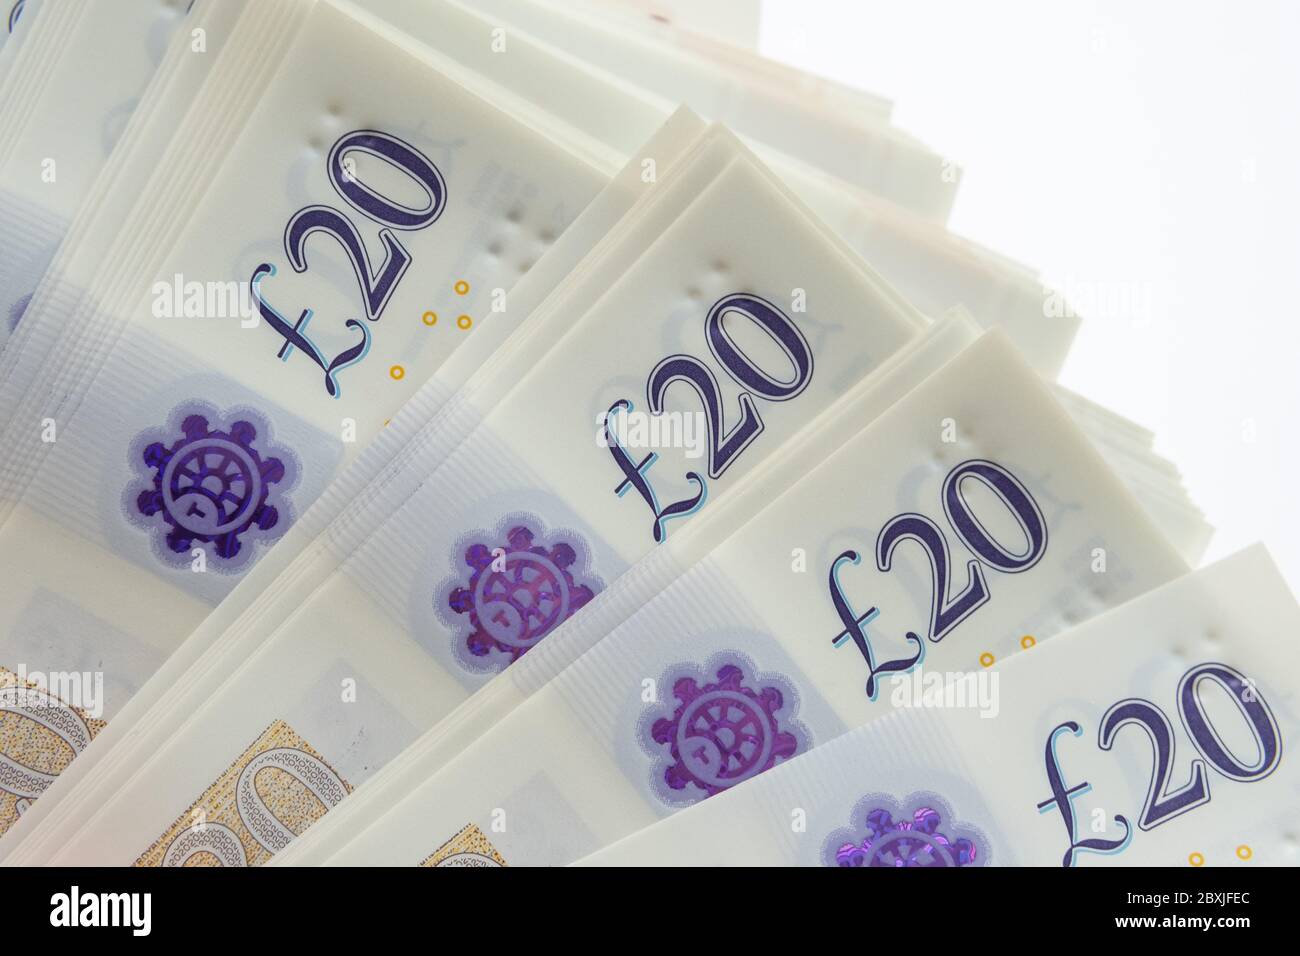 Ecke des Stapels von 20 Pfund Banknoten auf weiß isoliert. Foto von neuen Polymer 20 Pfund Note veröffentlicht im februar 2020 in Großbritannien. Stockfoto